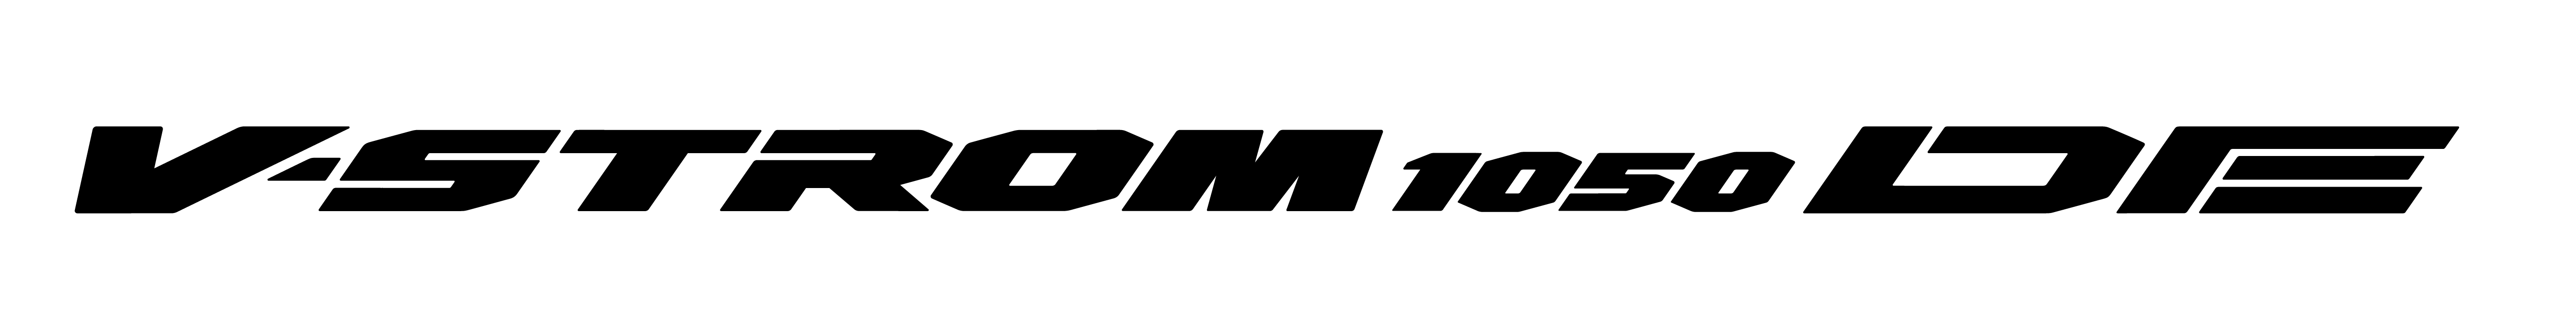 V-Strom 1050 DE logo